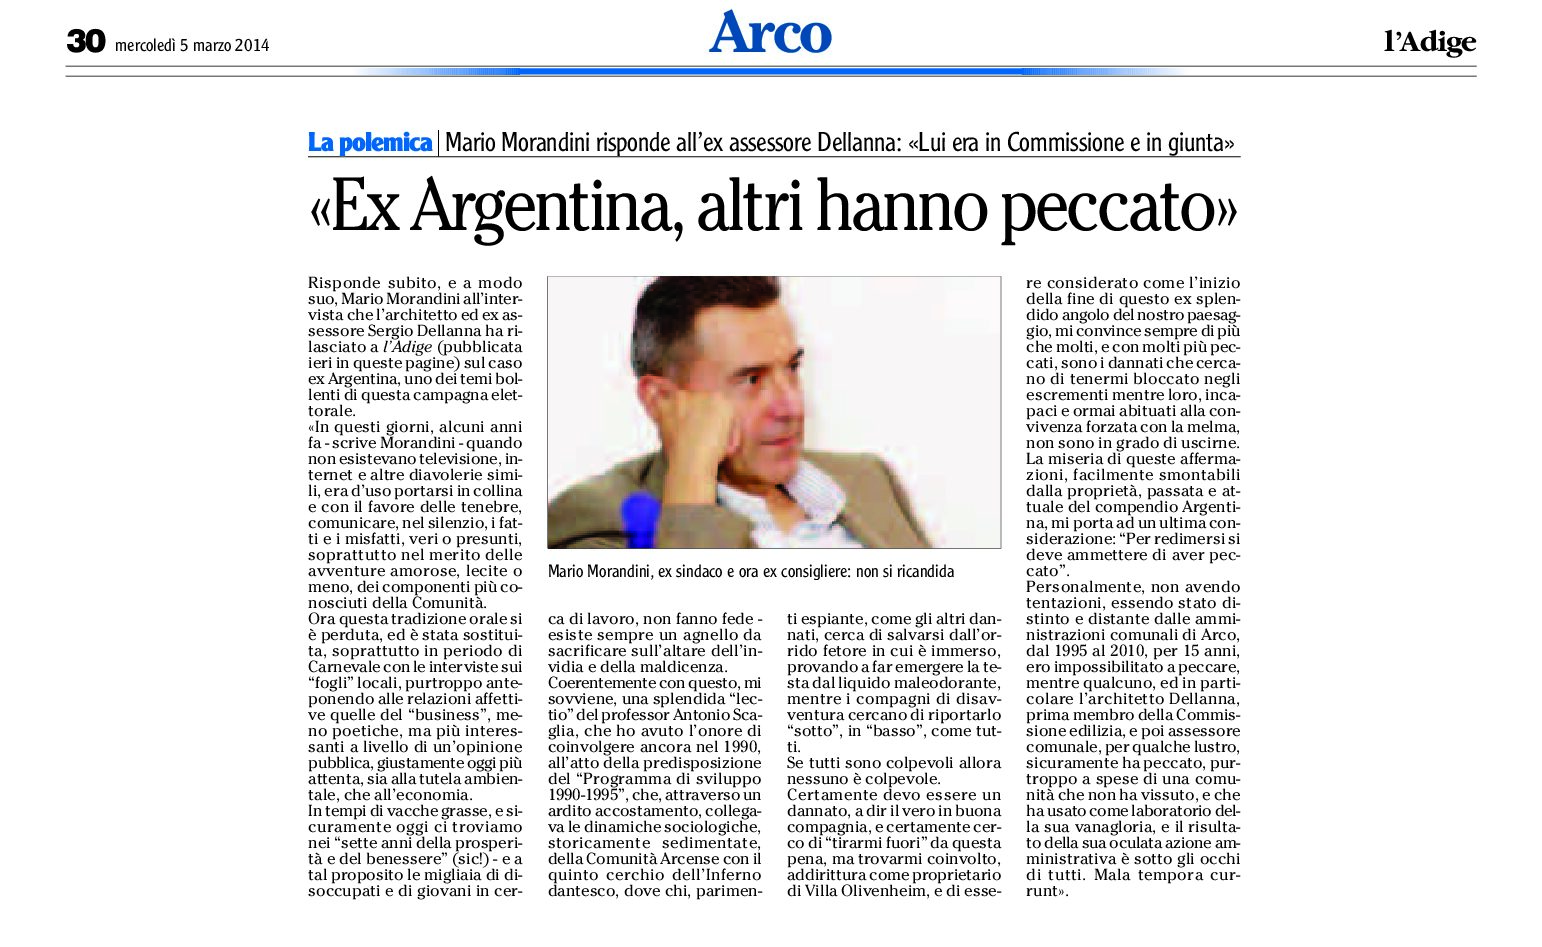 Arco: Ex Argentina, Morandini risponde a Dellanna